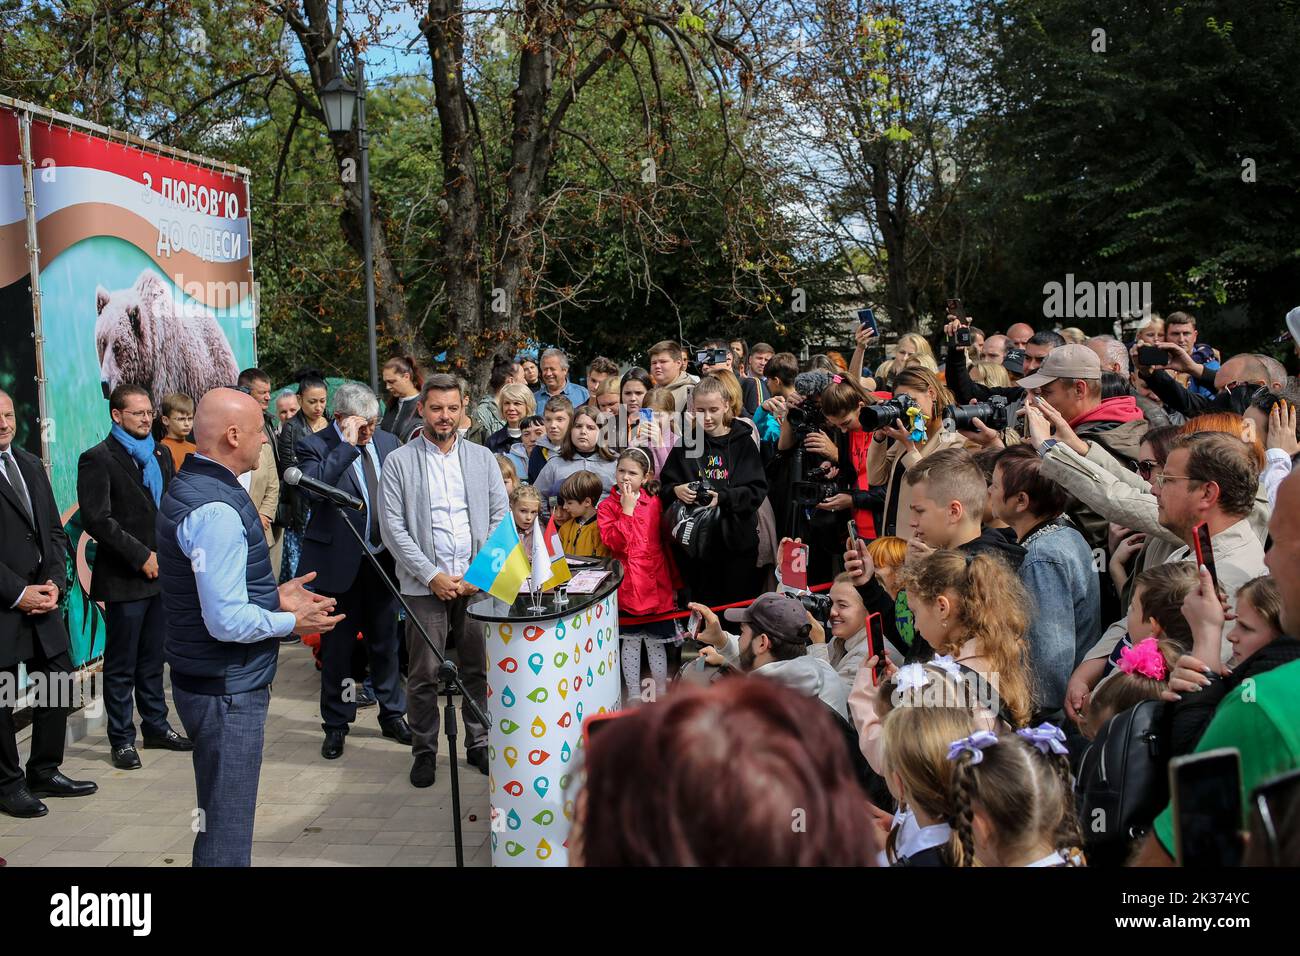 Gennady Trukhanov (am Mikrofon) wird in der Öffentlichkeit gesprochen. Der Zoo von Odessa, einer der ältesten in der Ukraine, wurde im September 1922 zu Ehren des hundertjährigen Bestehens des Zoos gegründet, es wurden feierliche Veranstaltungen abgehalten:1.? die gedenktafel wurde seinem ersten Direktor Heinrich Beizert geöffnet. 2.Ukrposhta gab einen speziellen Umschlag und einen Stempel aus. Die Auflage ist begrenzt, nur 200 Stück. Die Stempelabsage erfolgte direkt im Zoo. 3.gemeinsam mit dem Bürgermeister von Odessa, Gennady Trukhanov, eröffnete der Direktor des Zoos, Igor Belyakov, ein neues Löwenjunges.im April eröffnete ein Paar weiße Löwen aus dem Feldman Ecopar Stockfoto